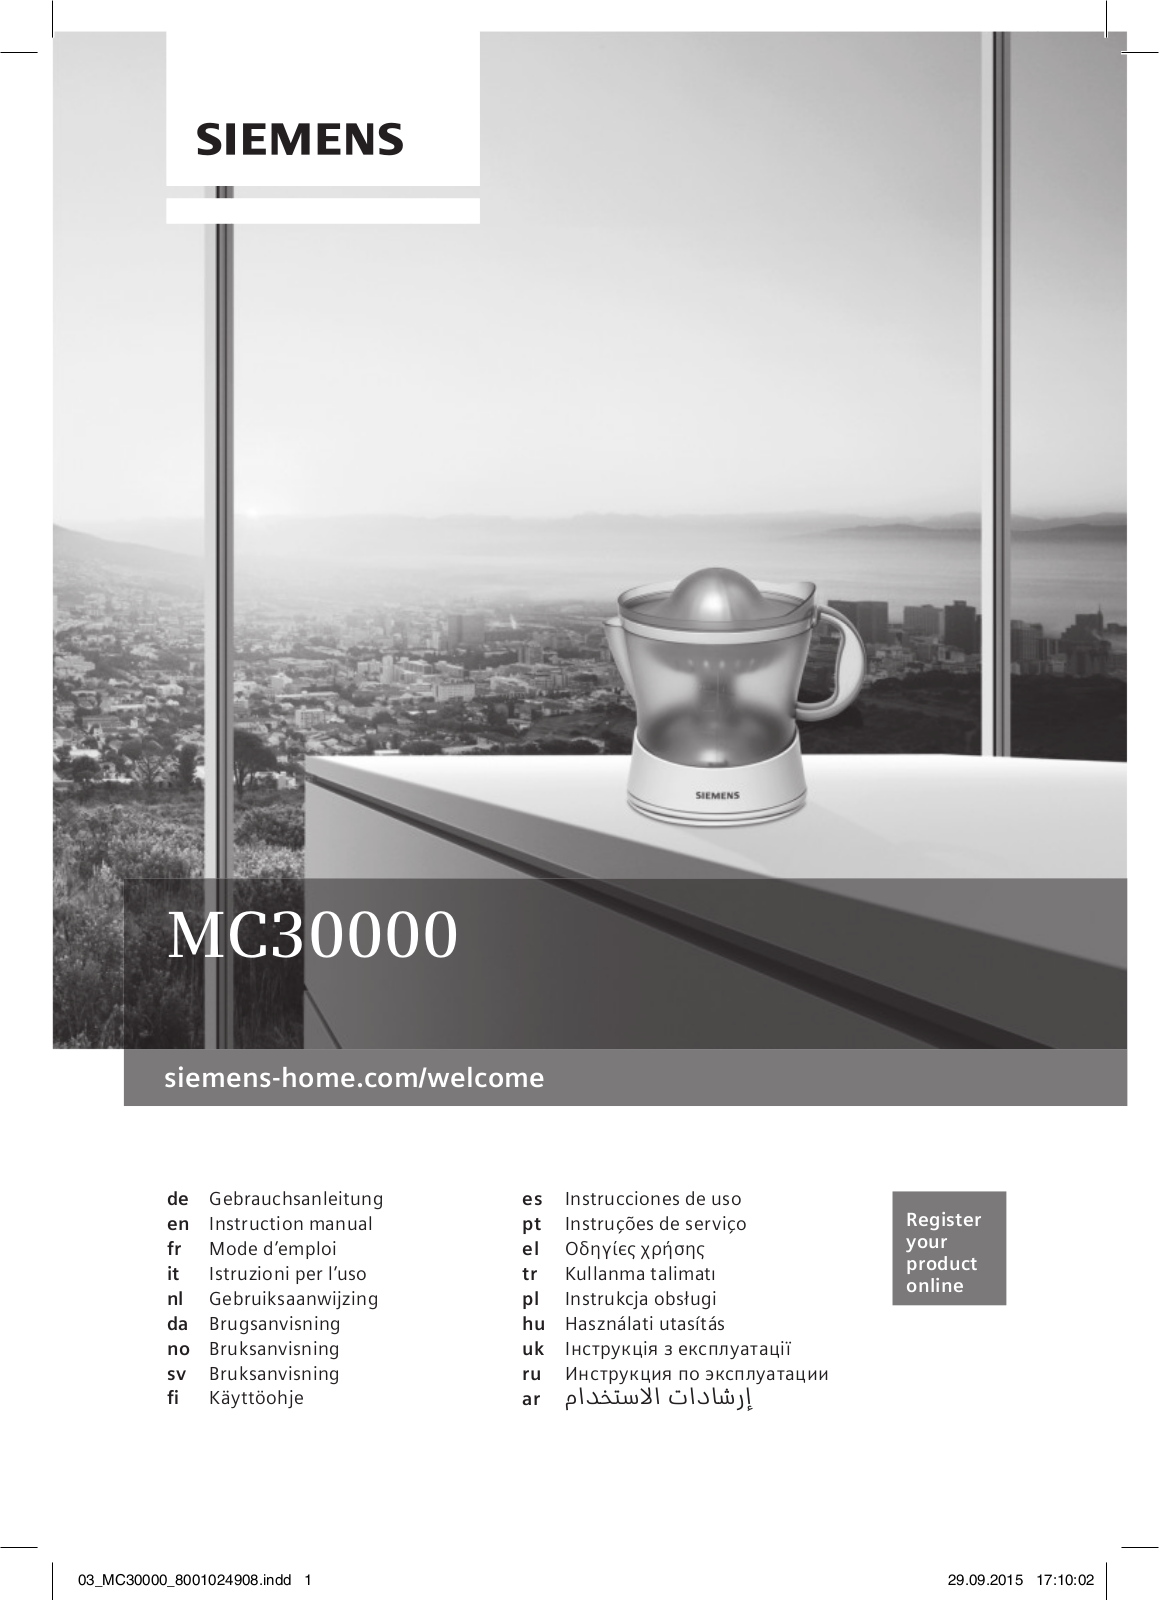 SIEMENS MC30000 User Manual